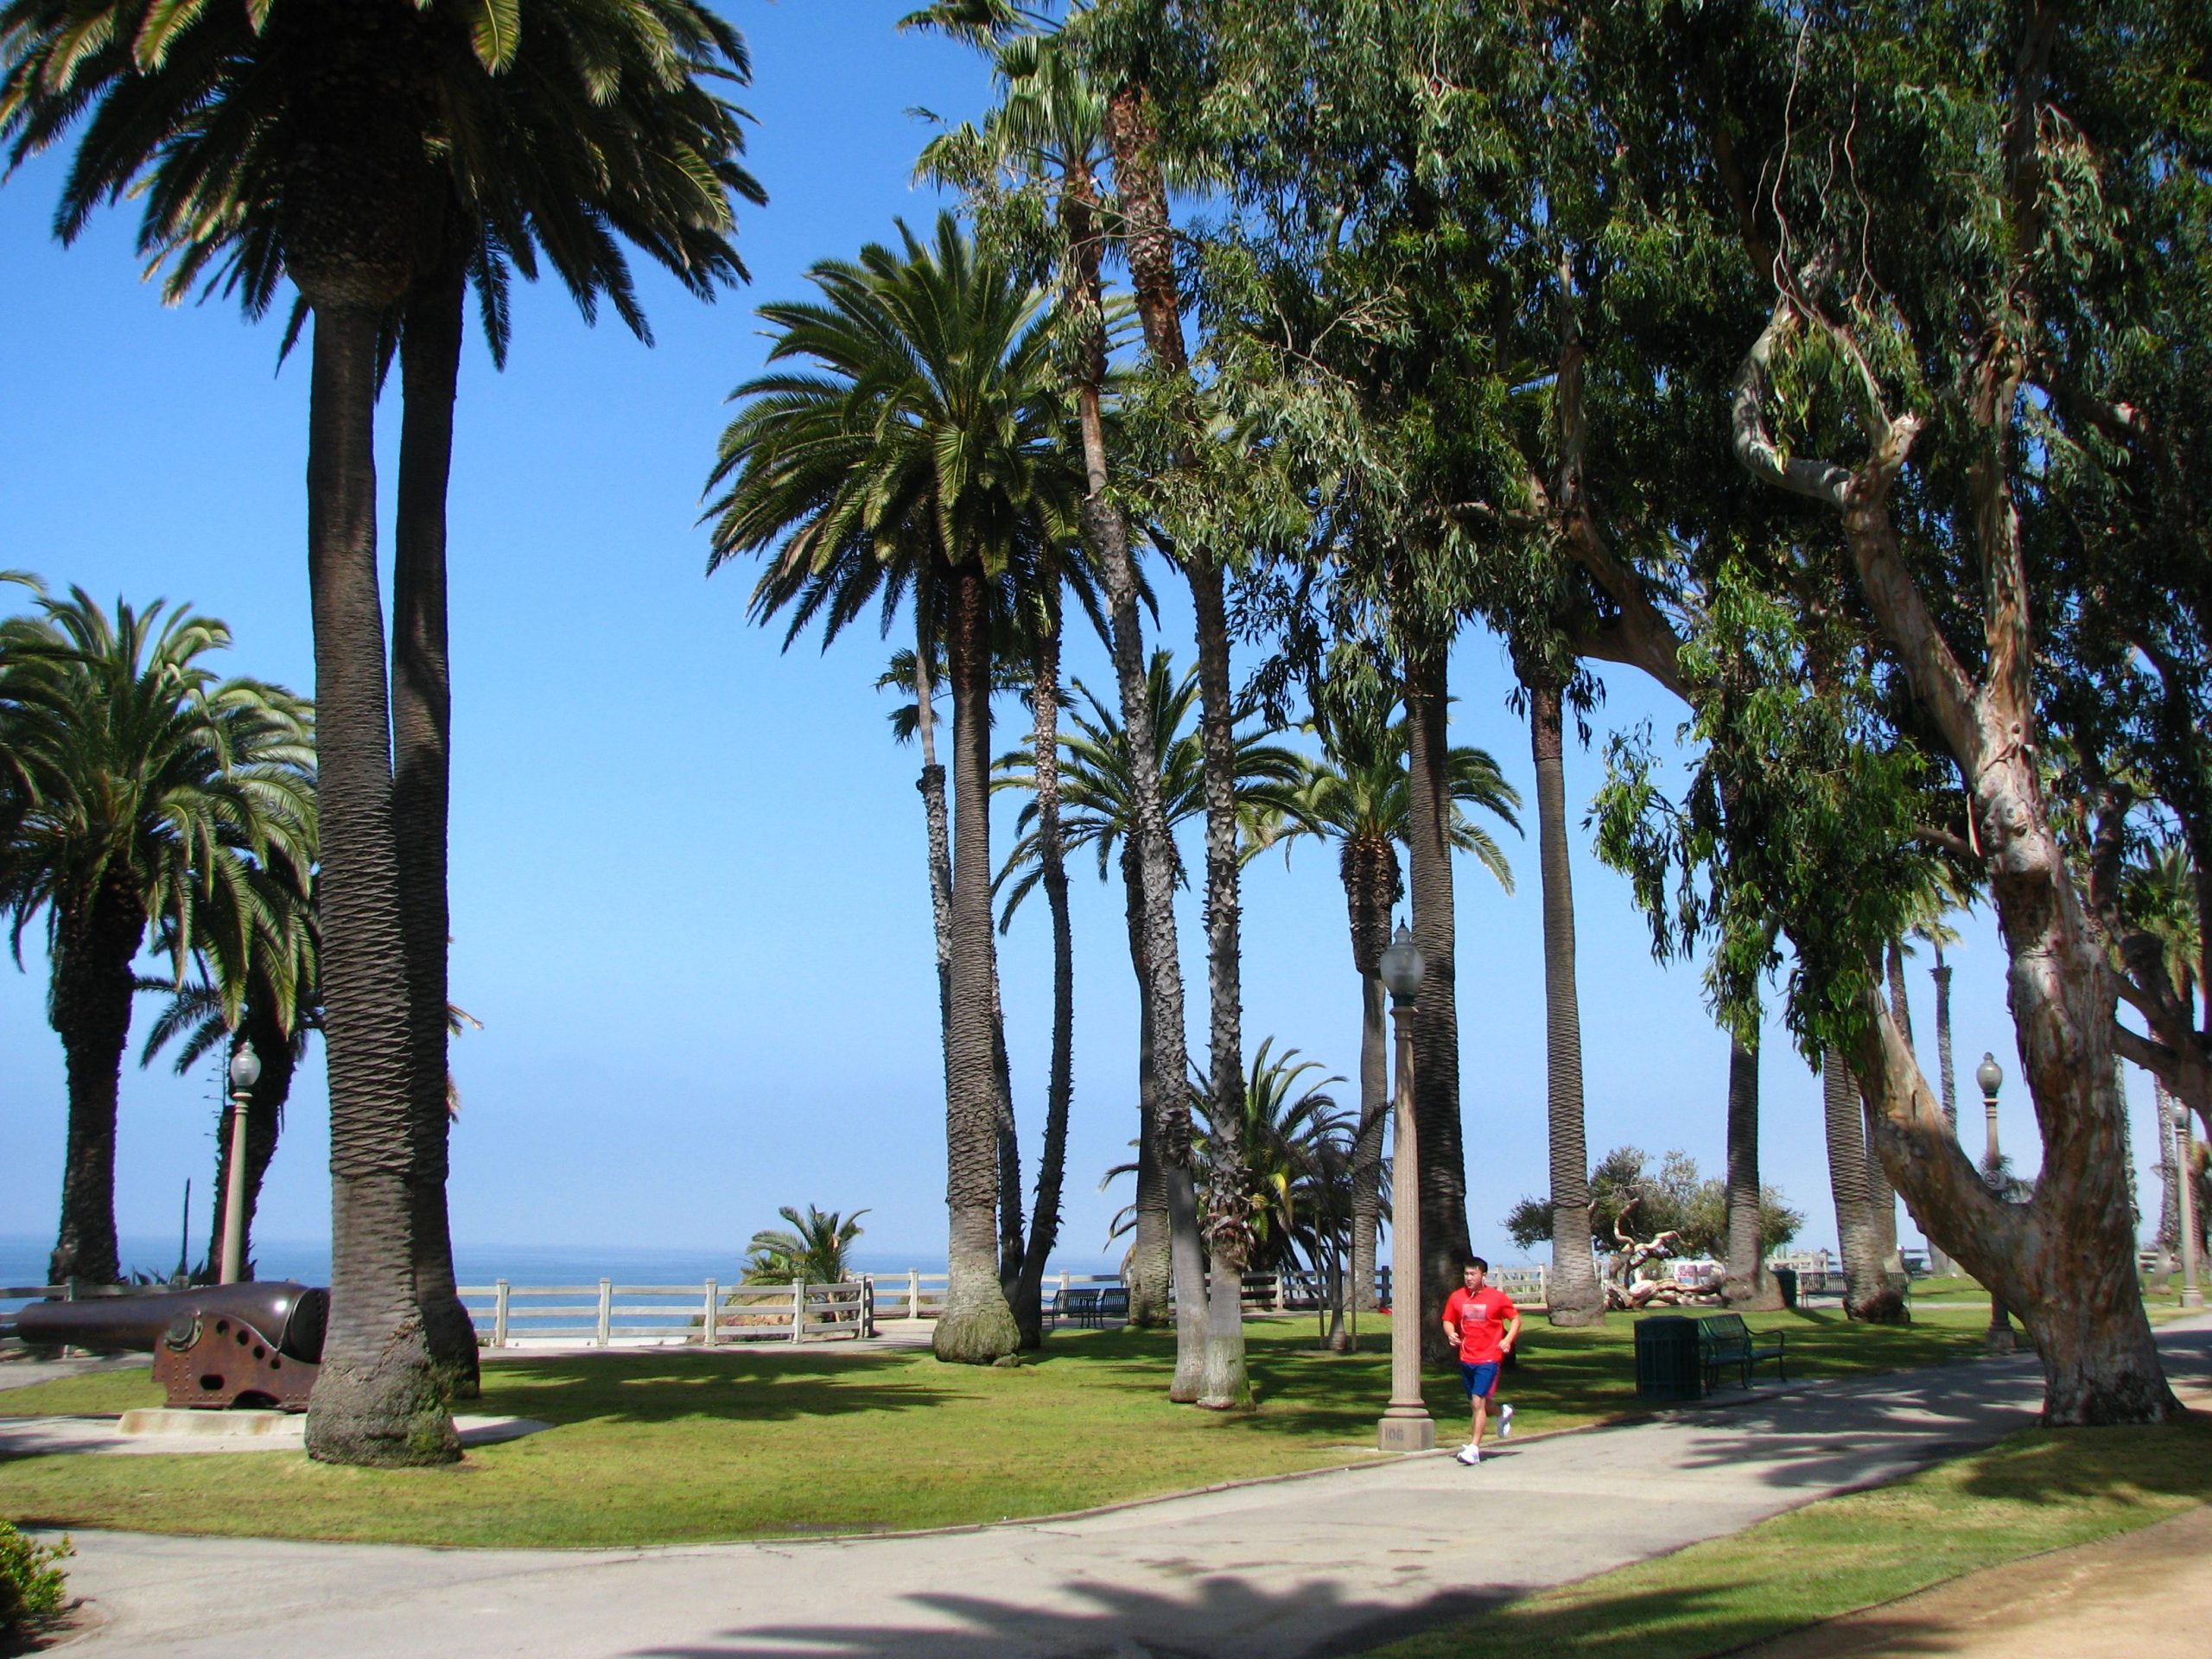 Panduan Santa Monica dan Venice Beach di Abbot Kinney Boulevard